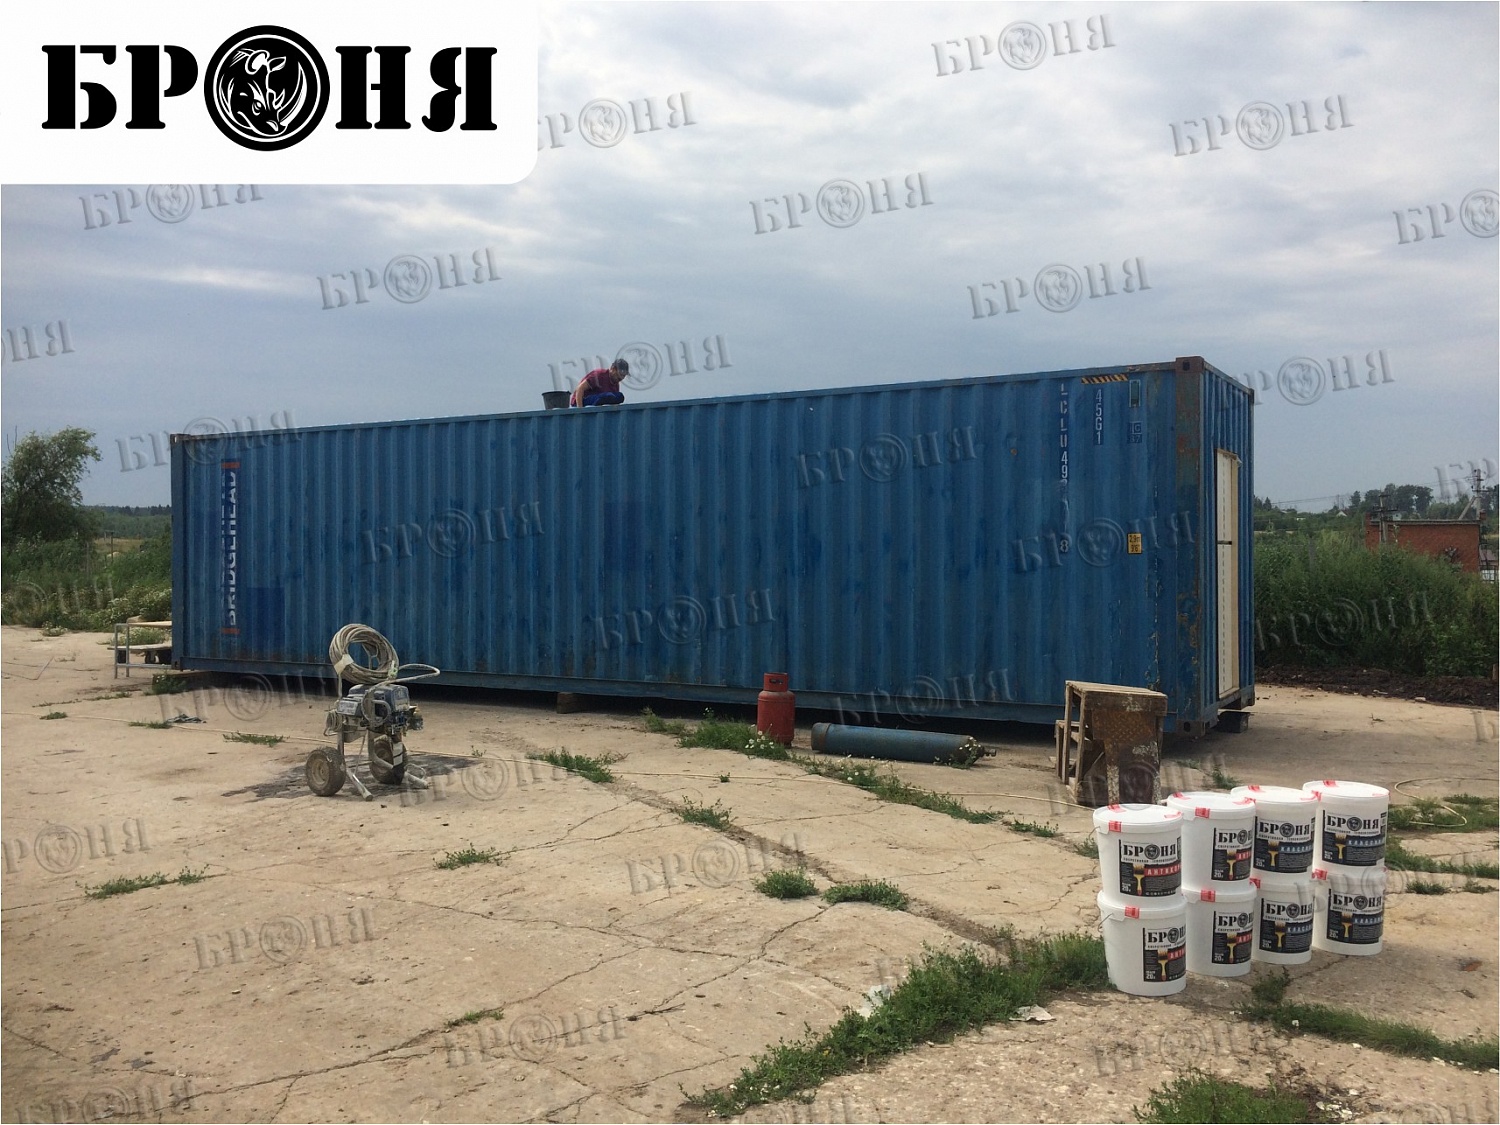 Шепилово Московской области, Броня при утеплении 40-футовых контейнеров для перепелиной птицефабрики